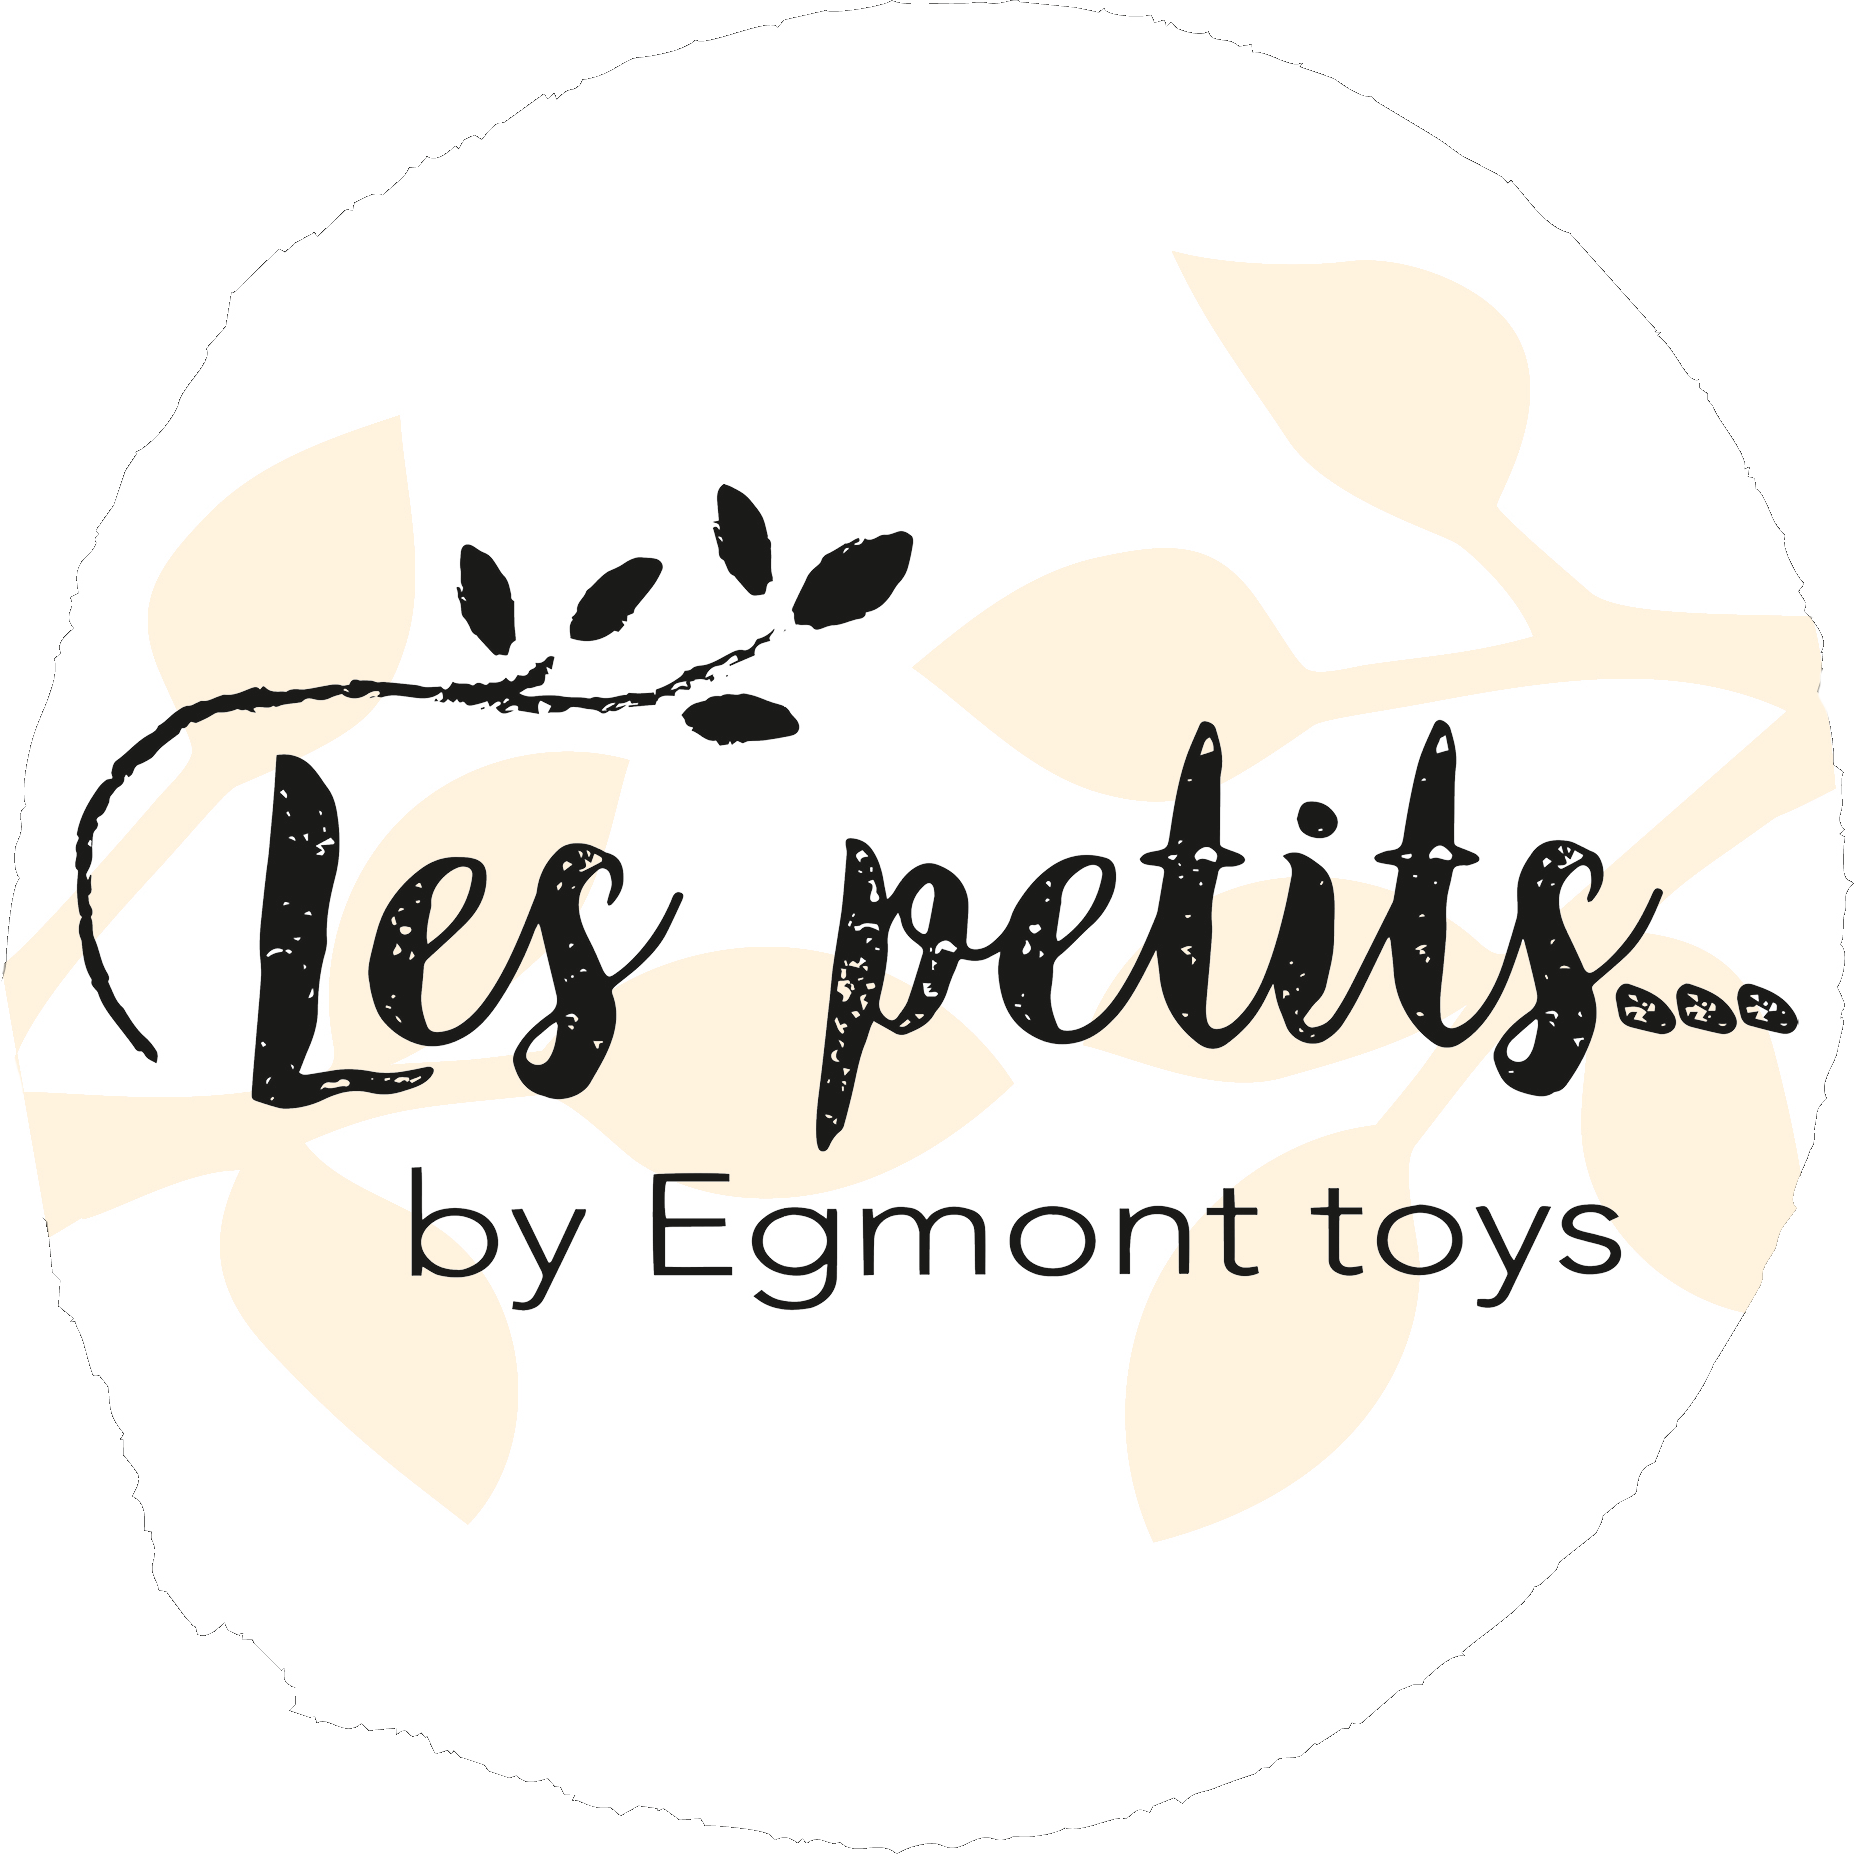 Les petits by Egmont toys